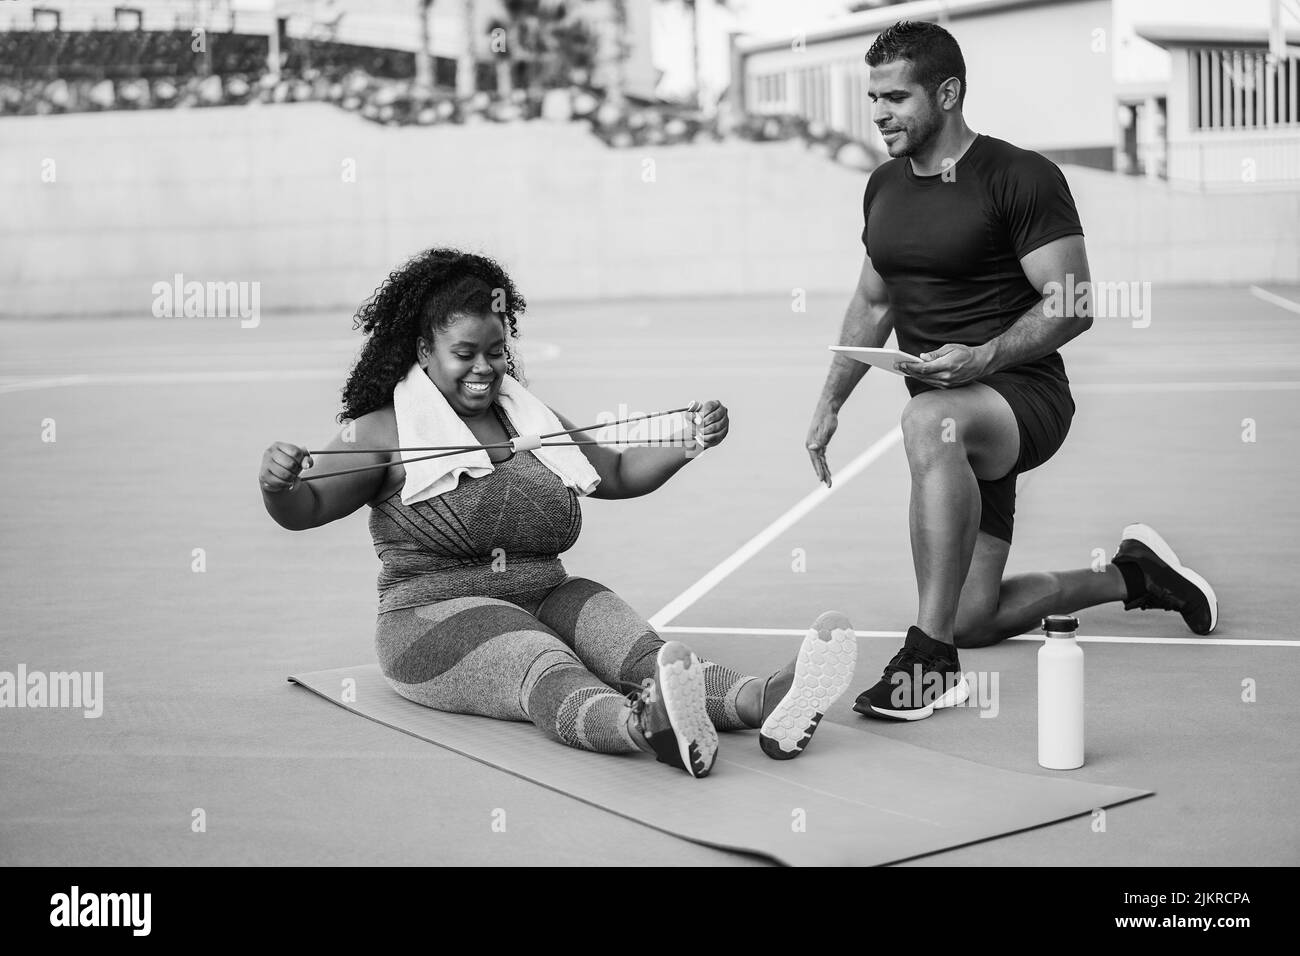 Femme curvy et entraîneur personnel faisant la séance d'entraînement en extérieur - Focus sur les mains de fille tenant la bande d'étirement - montage noir et blanc Banque D'Images